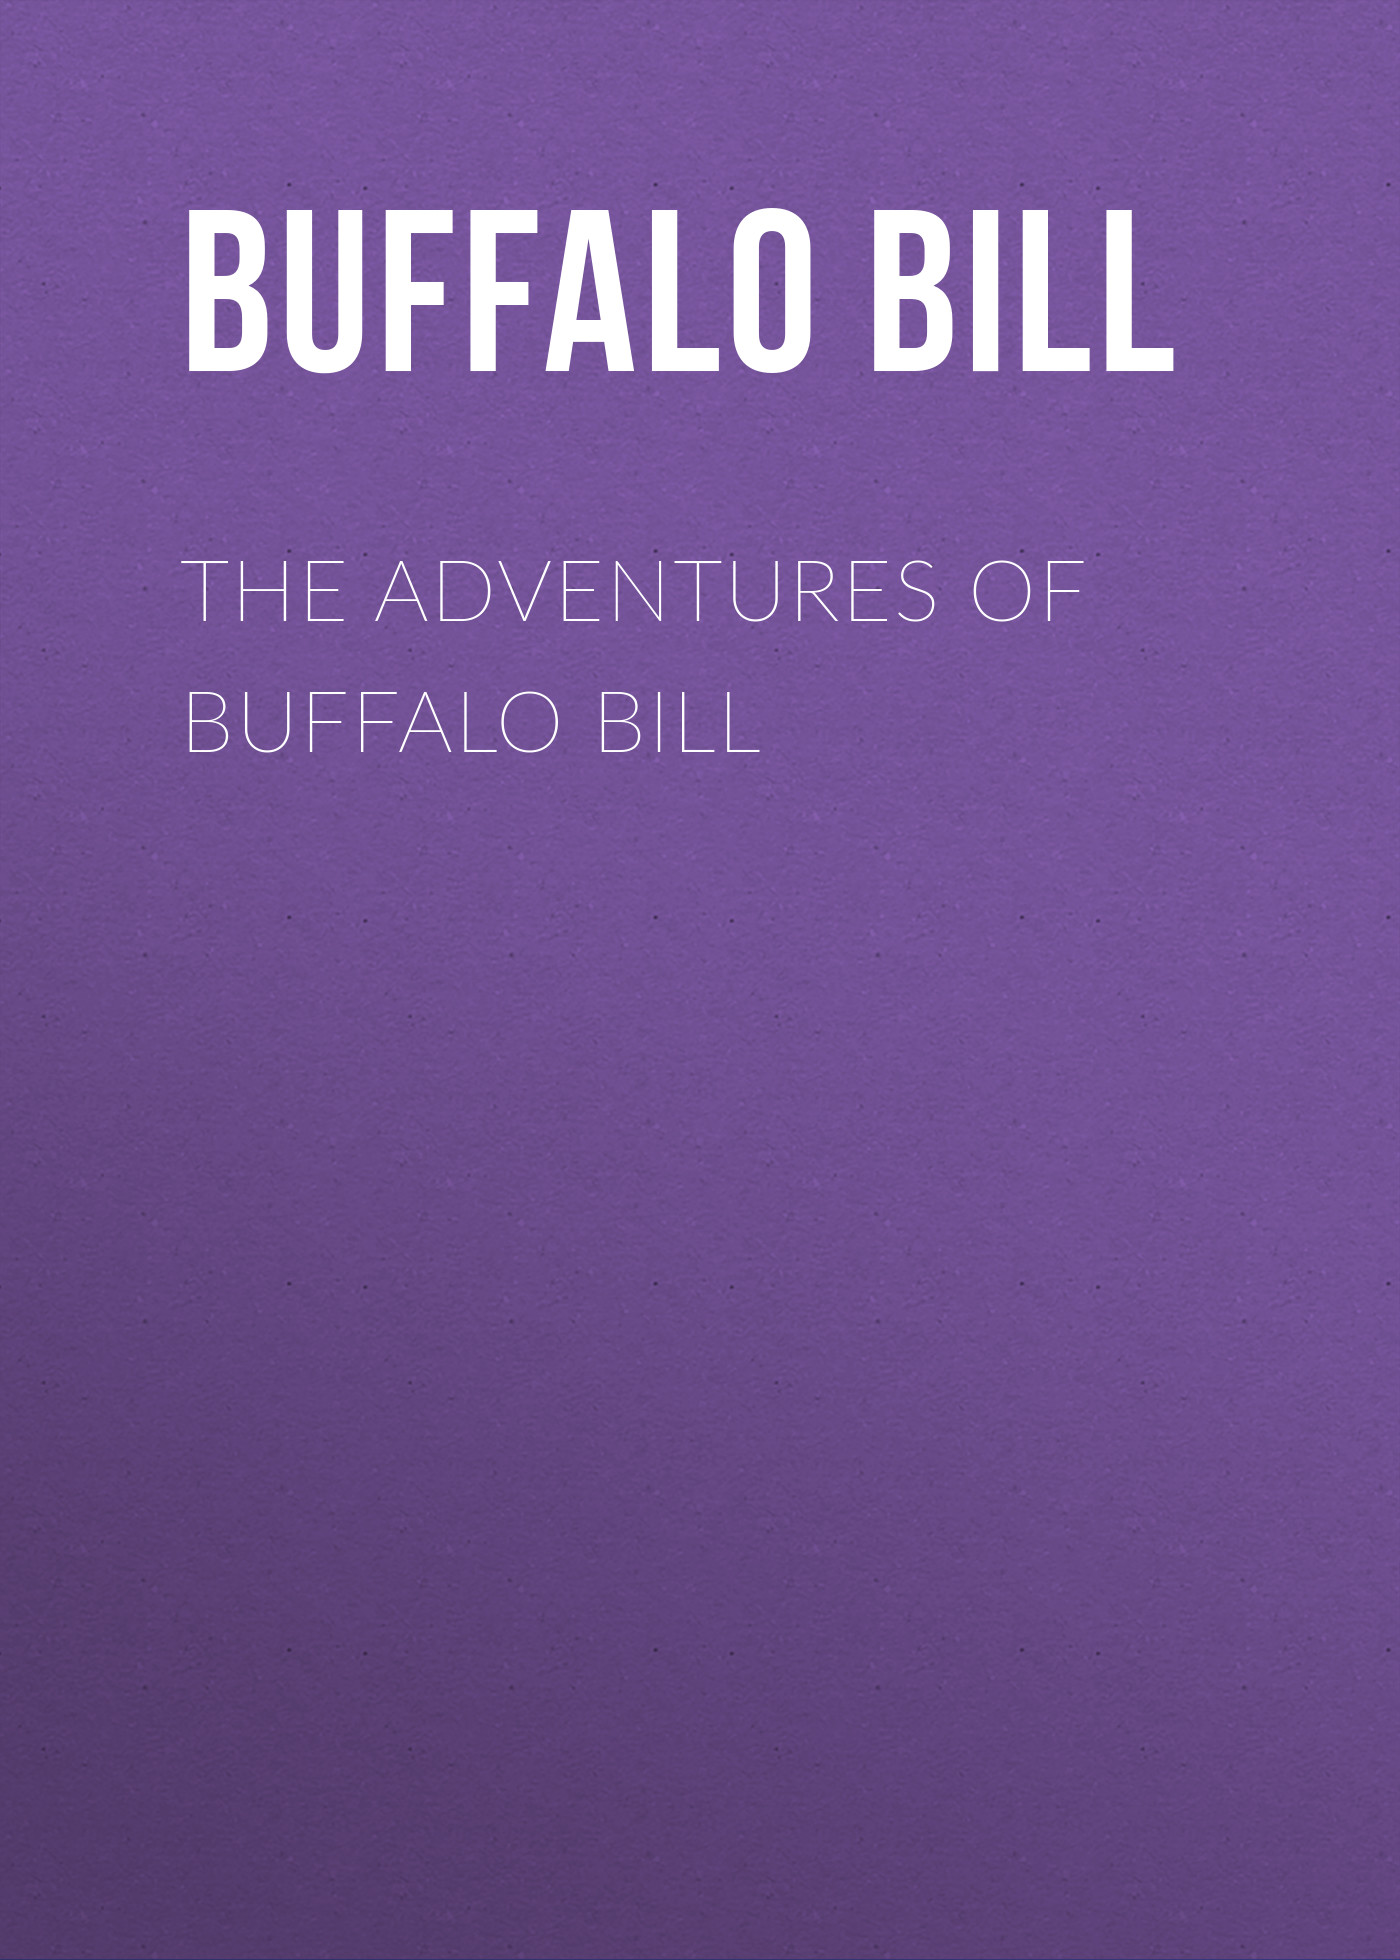 Книга The Adventures of Buffalo Bill из серии , созданная Bill Buffalo, может относится к жанру Зарубежная классика, Зарубежная старинная литература, Иностранные языки. Стоимость электронной книги The Adventures of Buffalo Bill с идентификатором 24170180 составляет 0.90 руб.